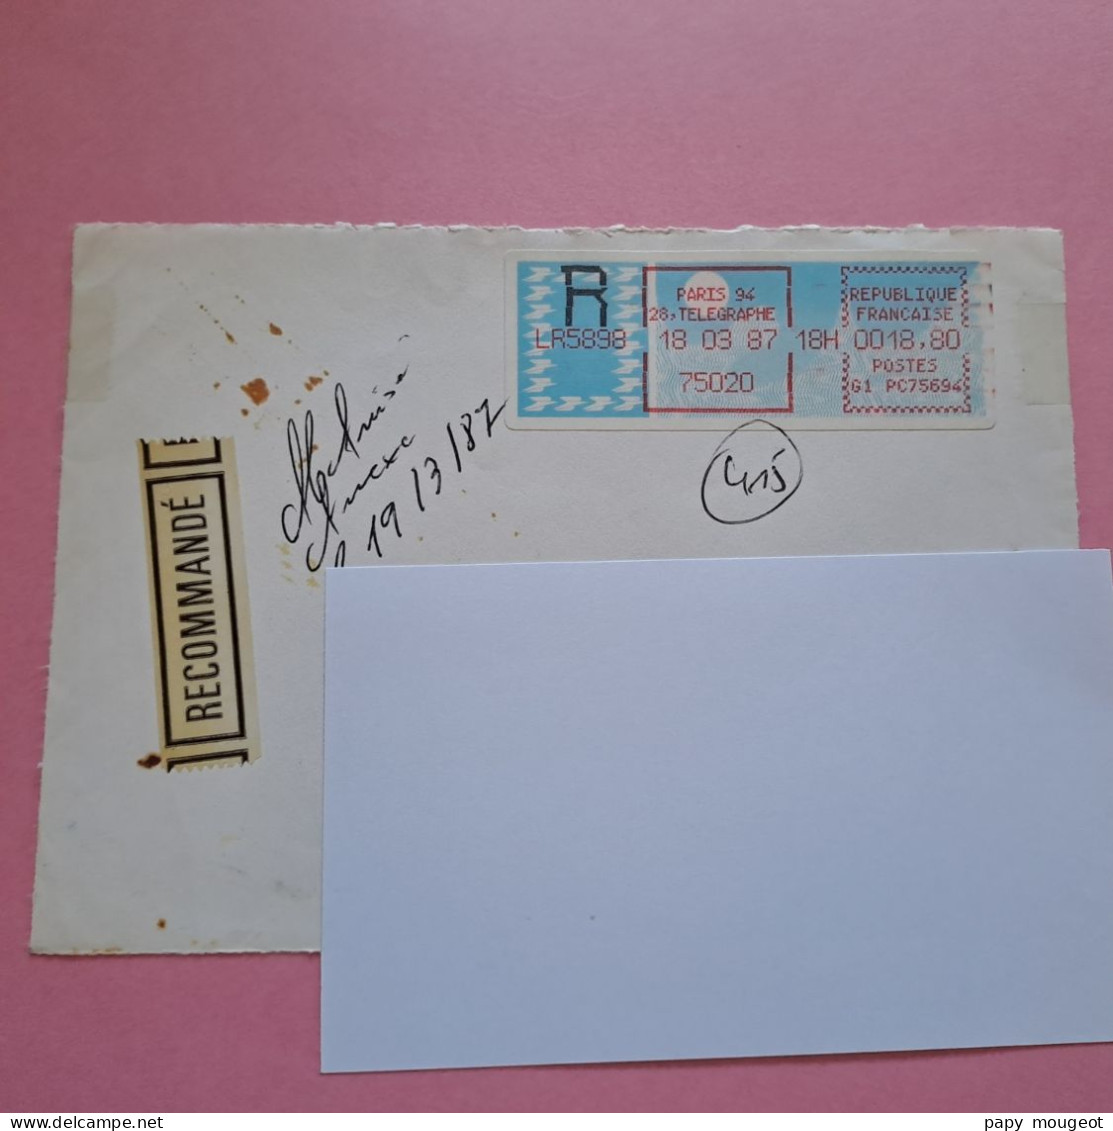 Paris 94 - 75020 - 18-03-1987 LR Poste G1 PC75694 - Devant D'enveloppe - 1985 Papier « Carrier »